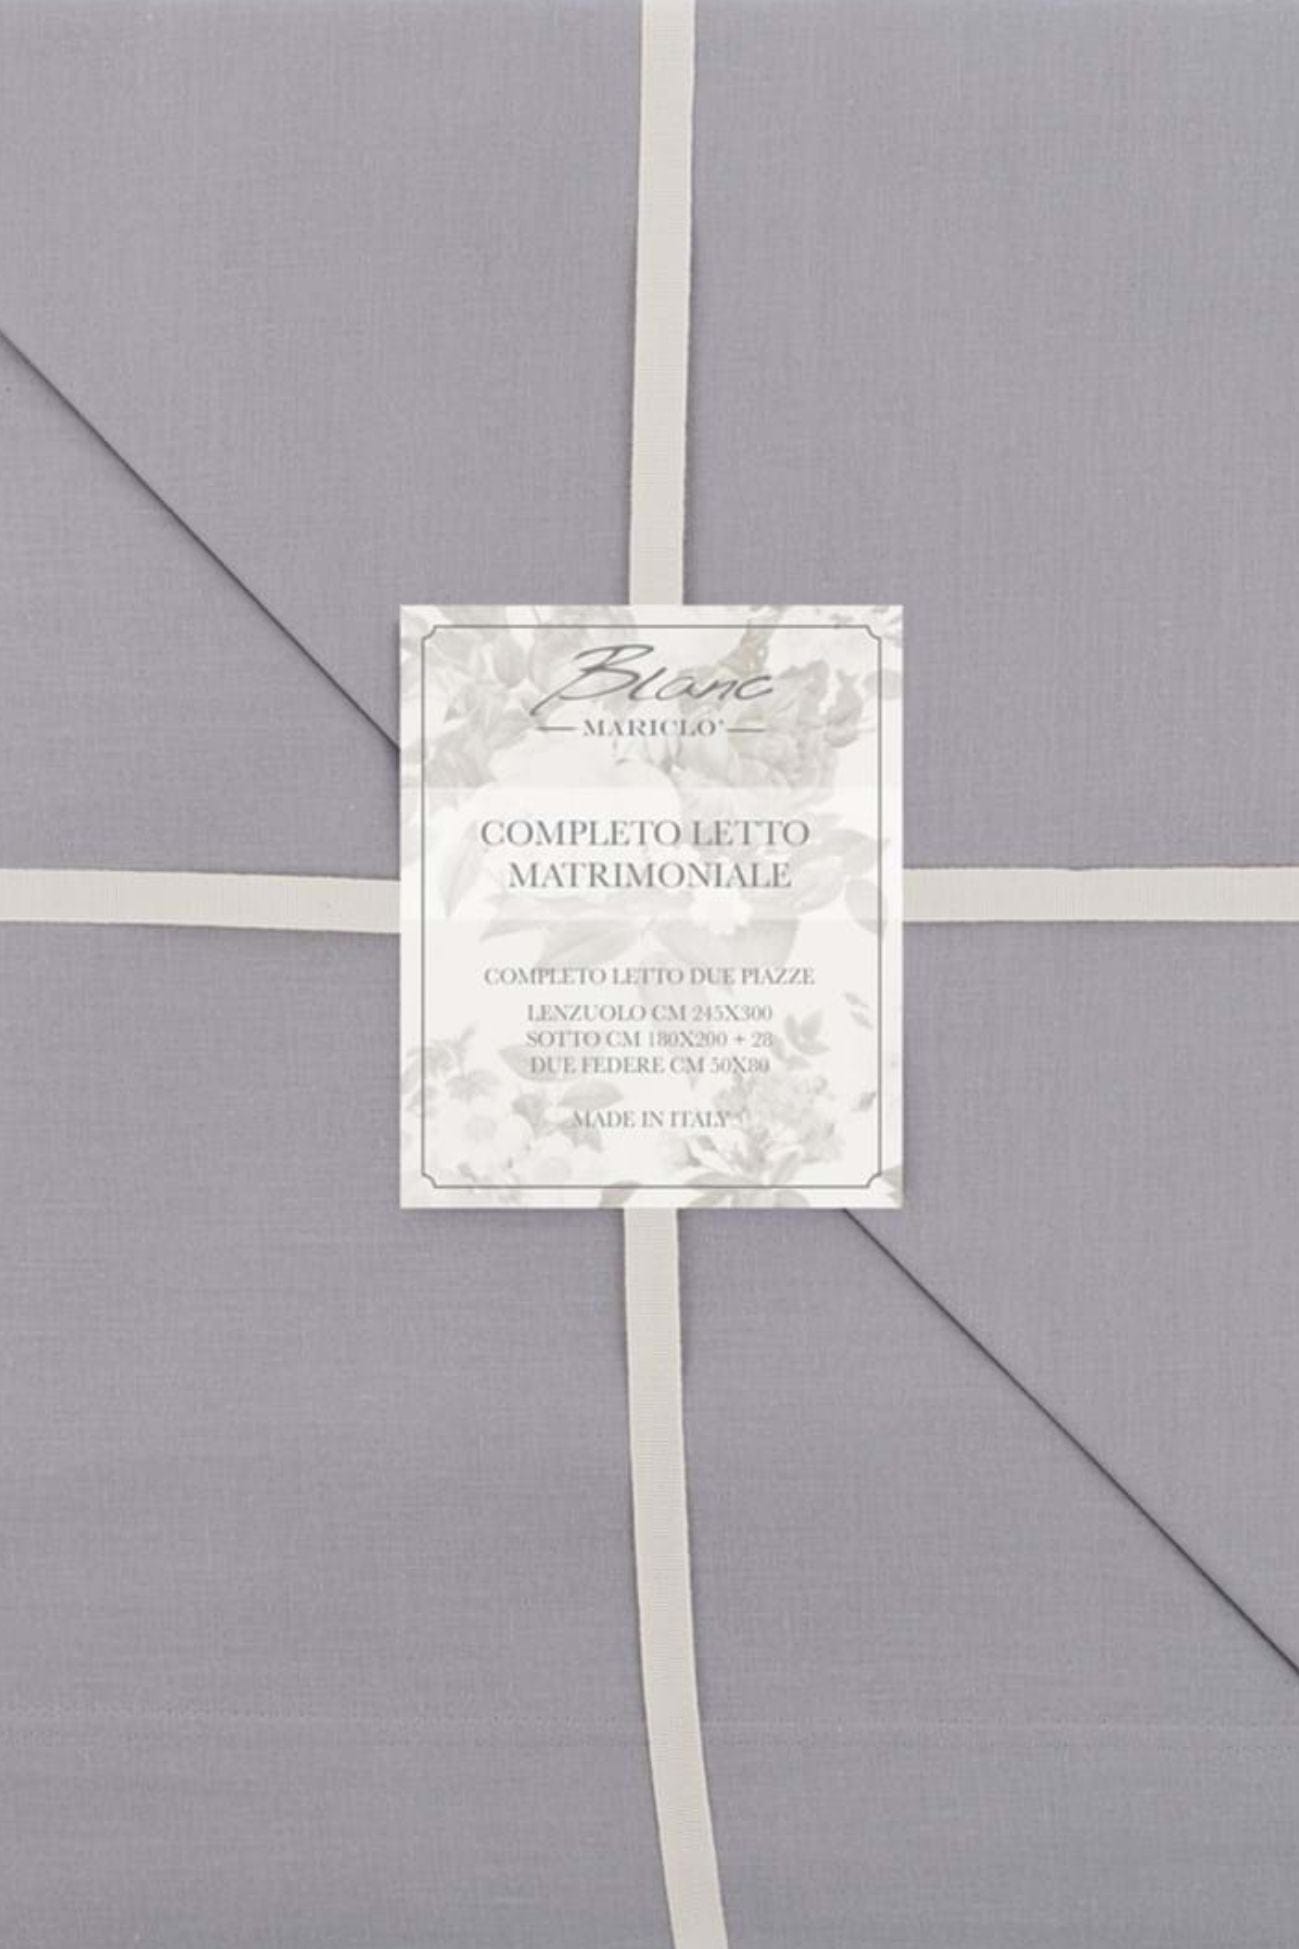 Blanc MariClo' Tuscany Tuscany - Completo letto matrimoniale grigio in puro cotone con 2 federe 300x245 | Blanc MariClo'